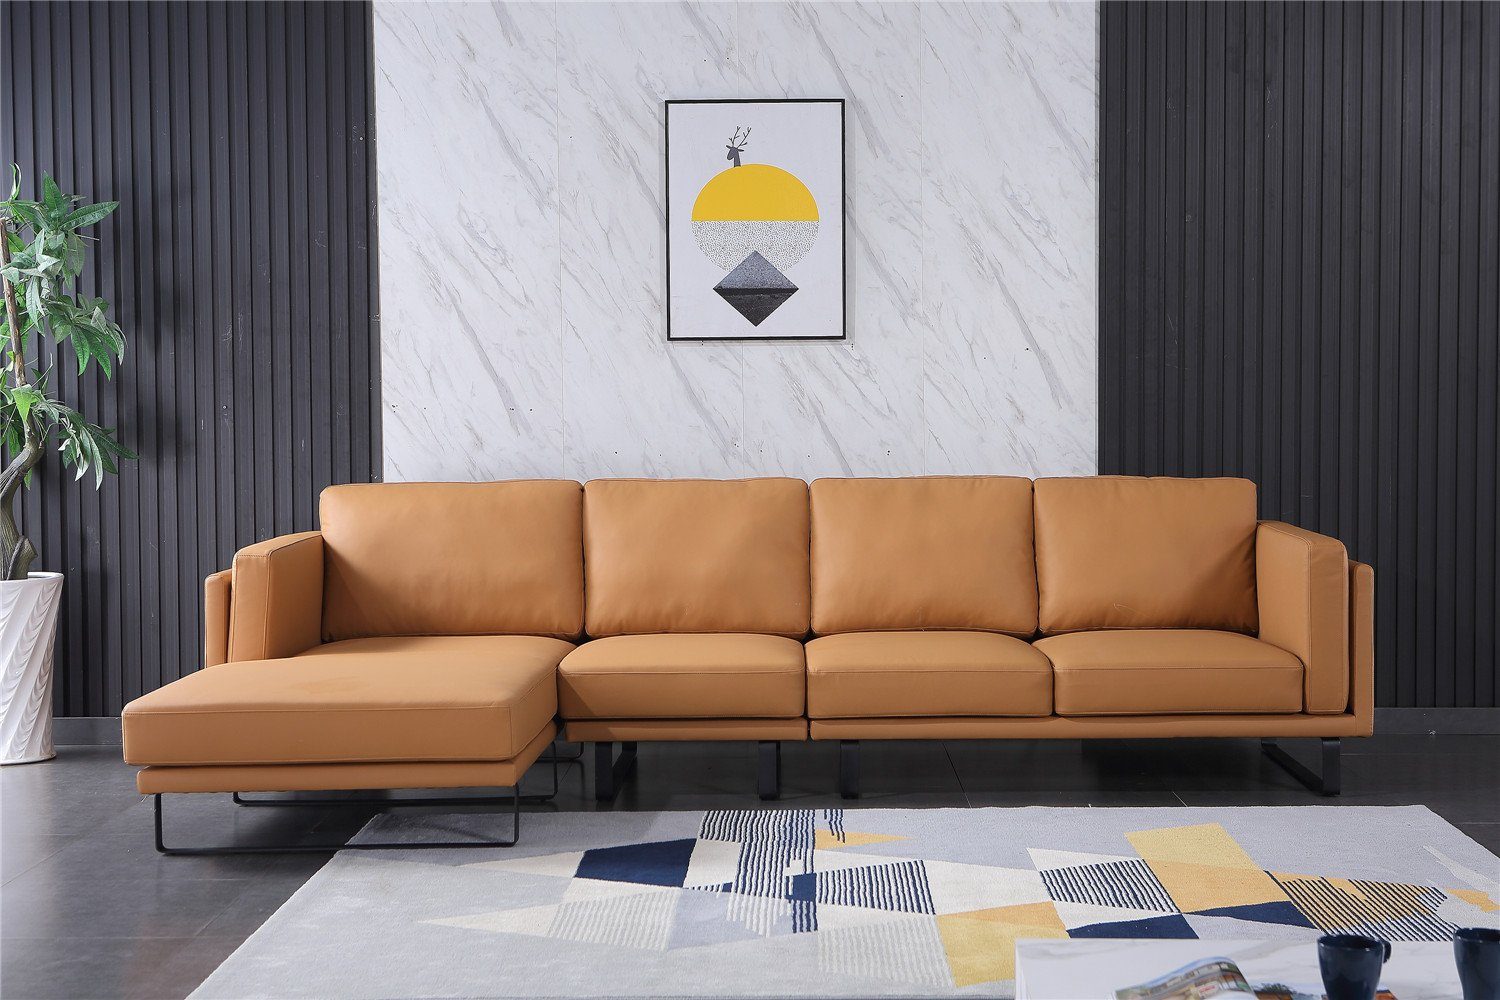 JVmoebel Ecksofa, Ledersofa Couch Sofagarnitur Ecksofa Eck Garnitur Design Modern Sofa Beige